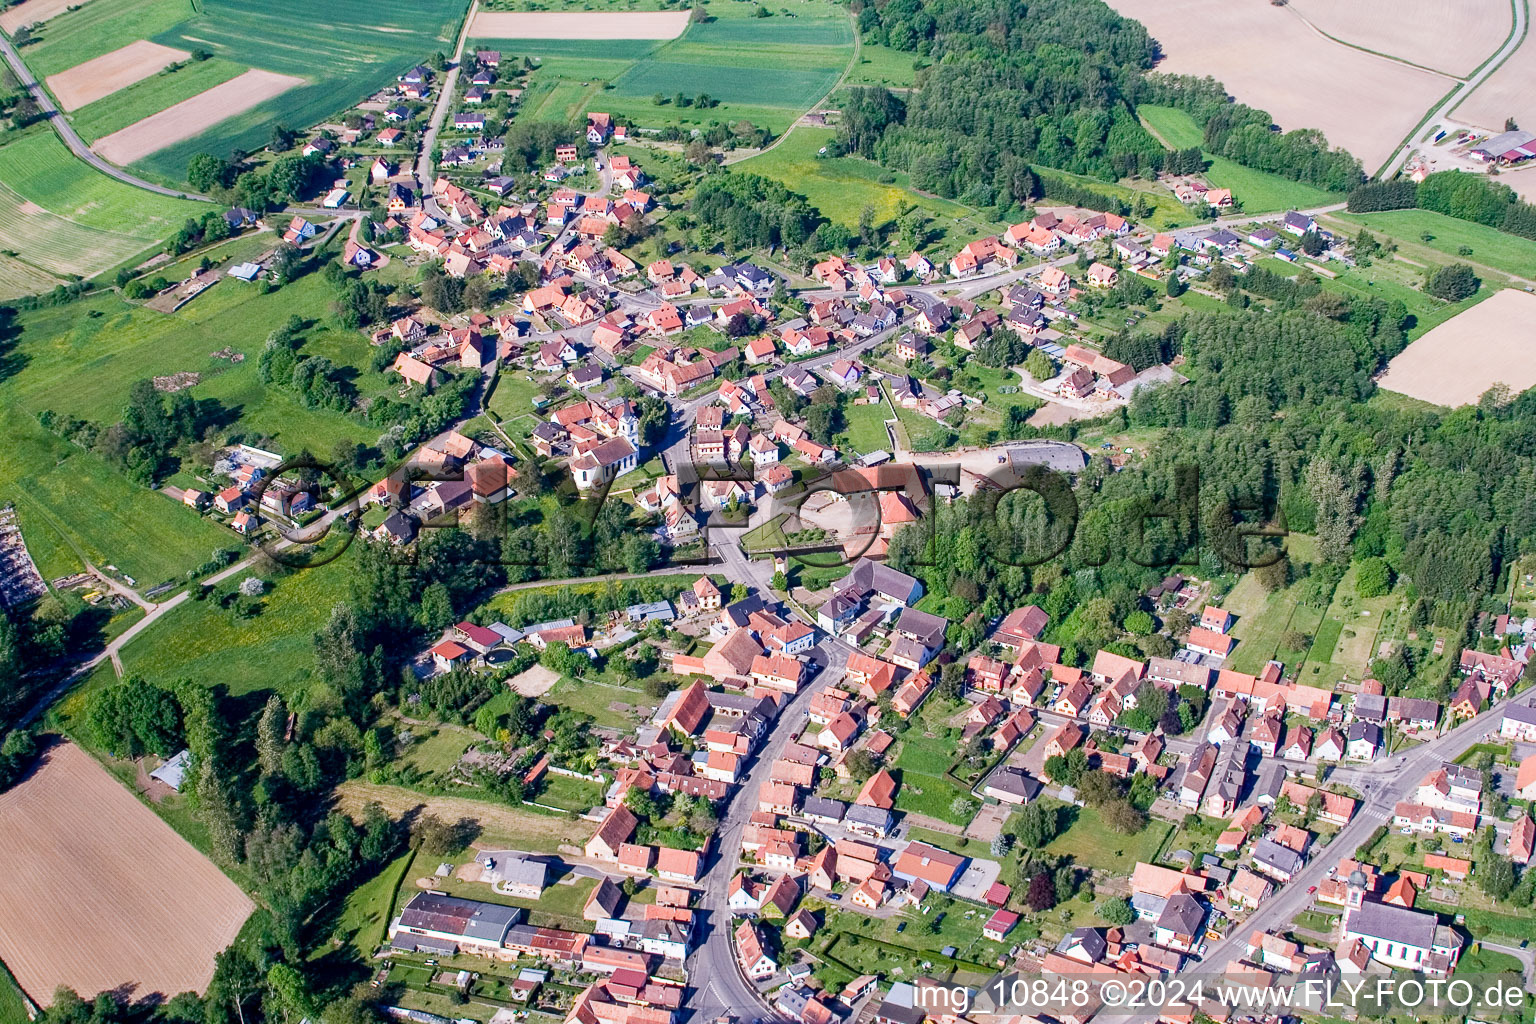 Luftbild von Dorf - Ansicht am Rande von landwirtschaftlichen Feldern und Nutzflächen in Gumbrechtshoffen in Grand Est im Bundesland Bas-Rhin, Frankreich